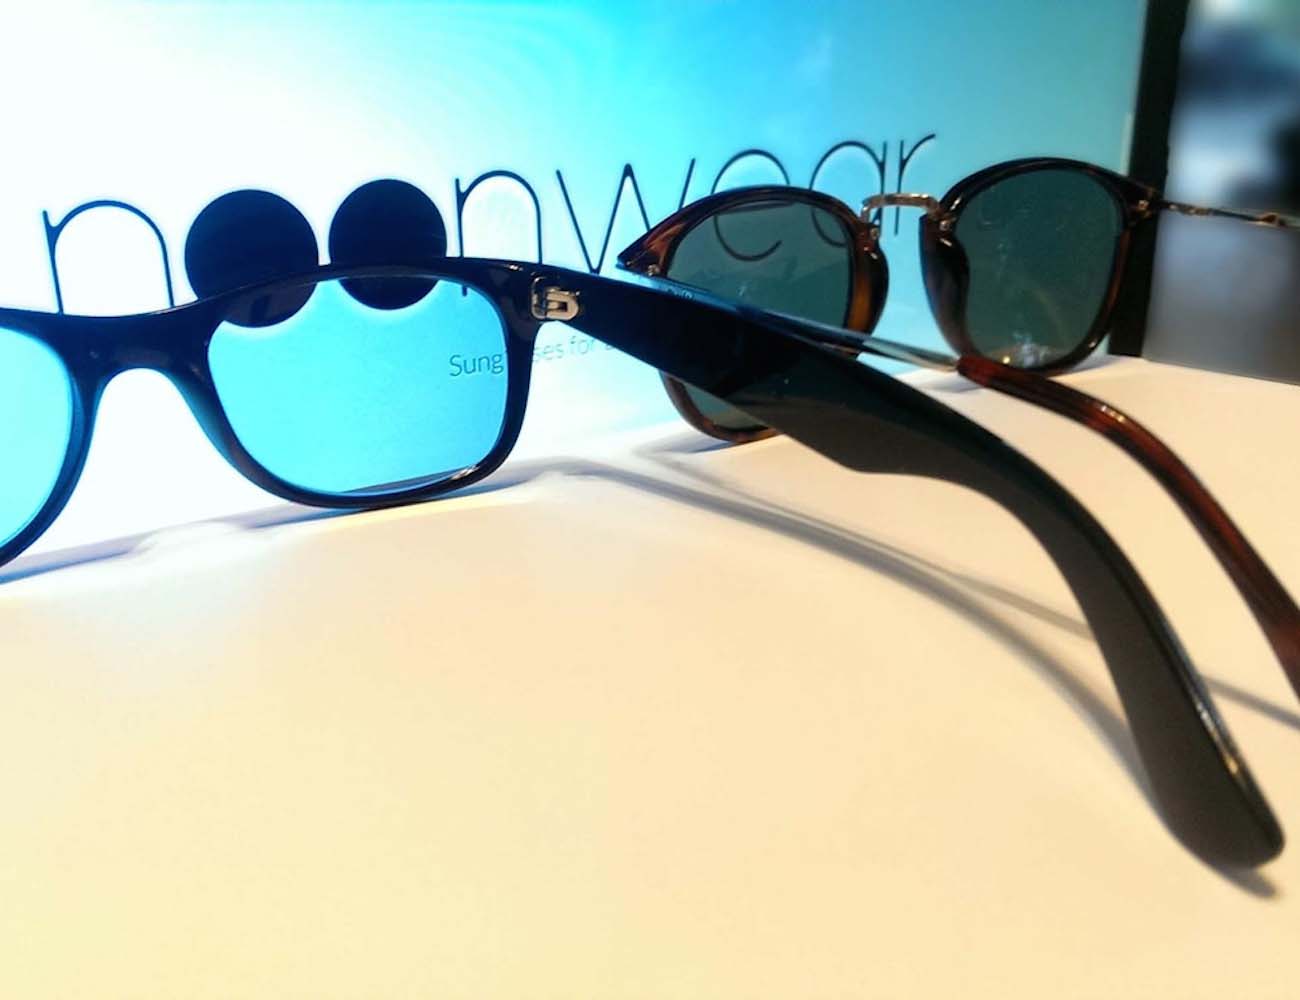 NoonWear Sunglasses for Electronics